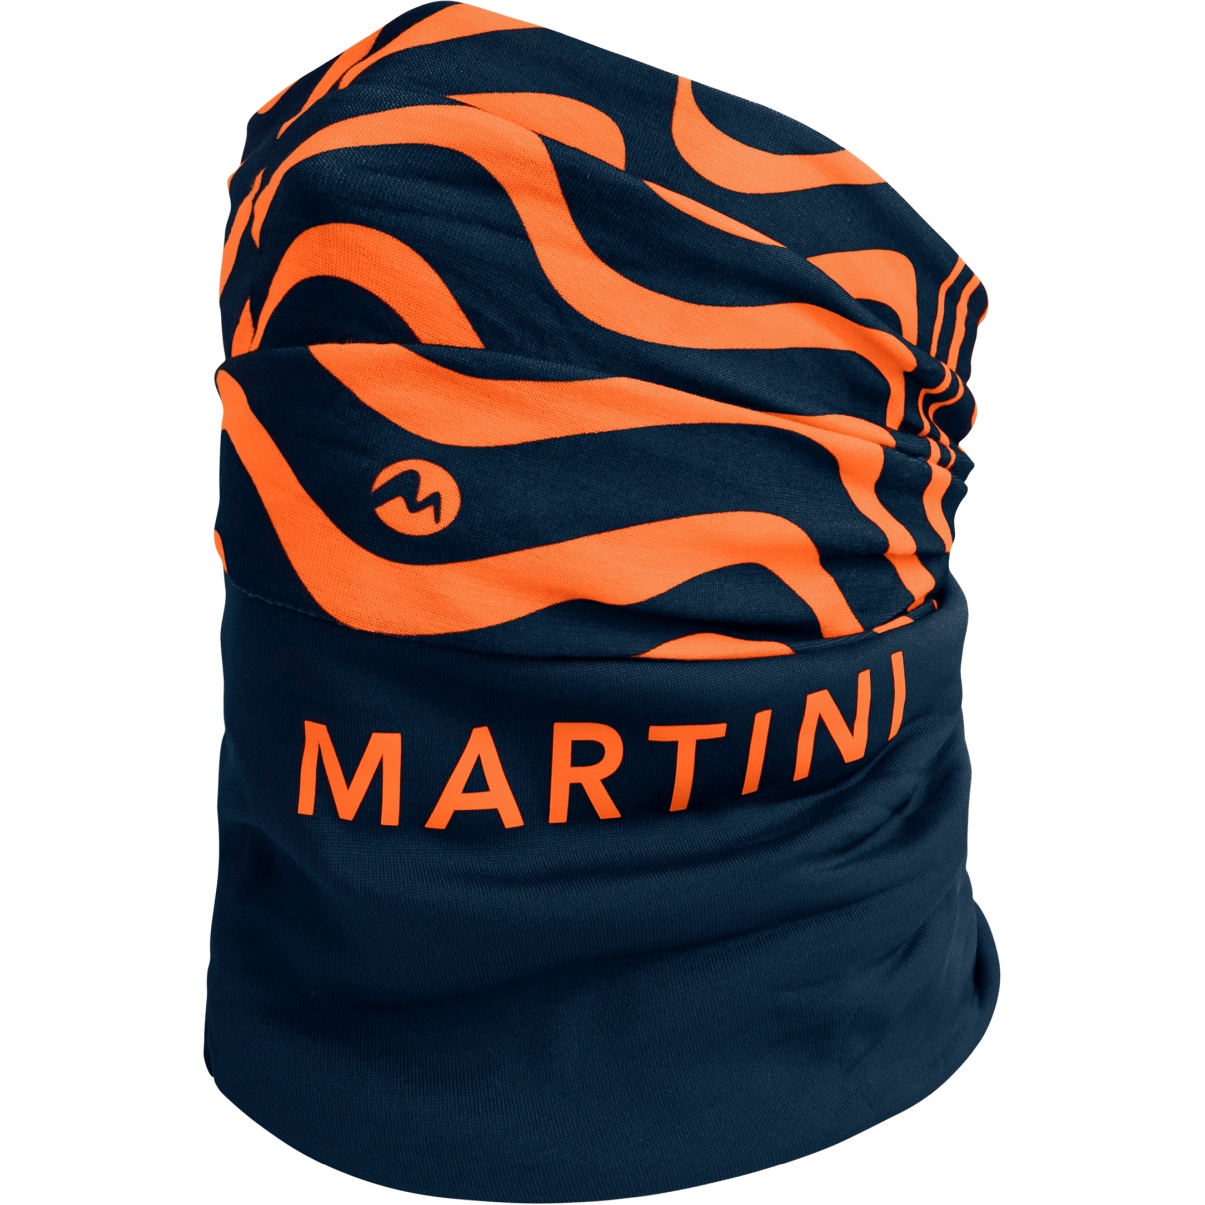 Produktbild von Martini Sportswear Complete W24 Multifunktionstuch - true navy/poppy